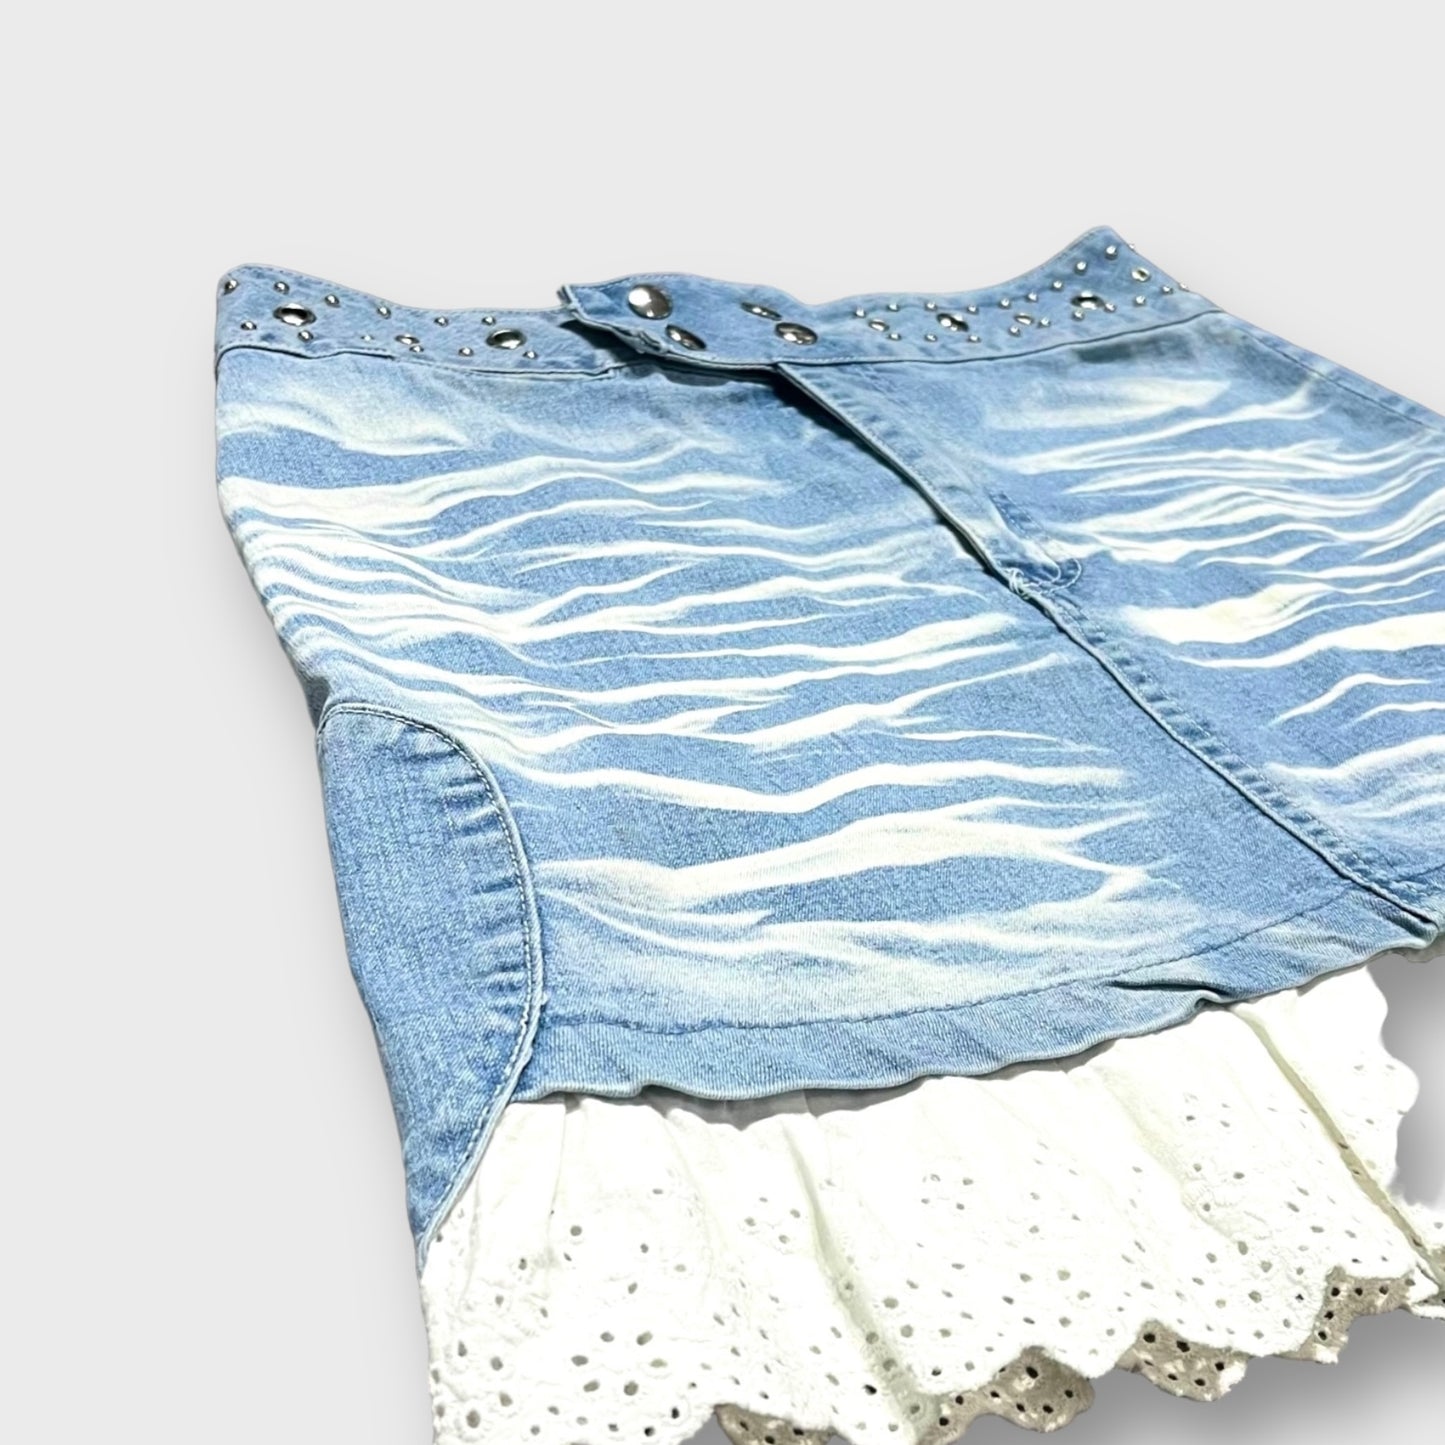 Lace design short length denim skirt